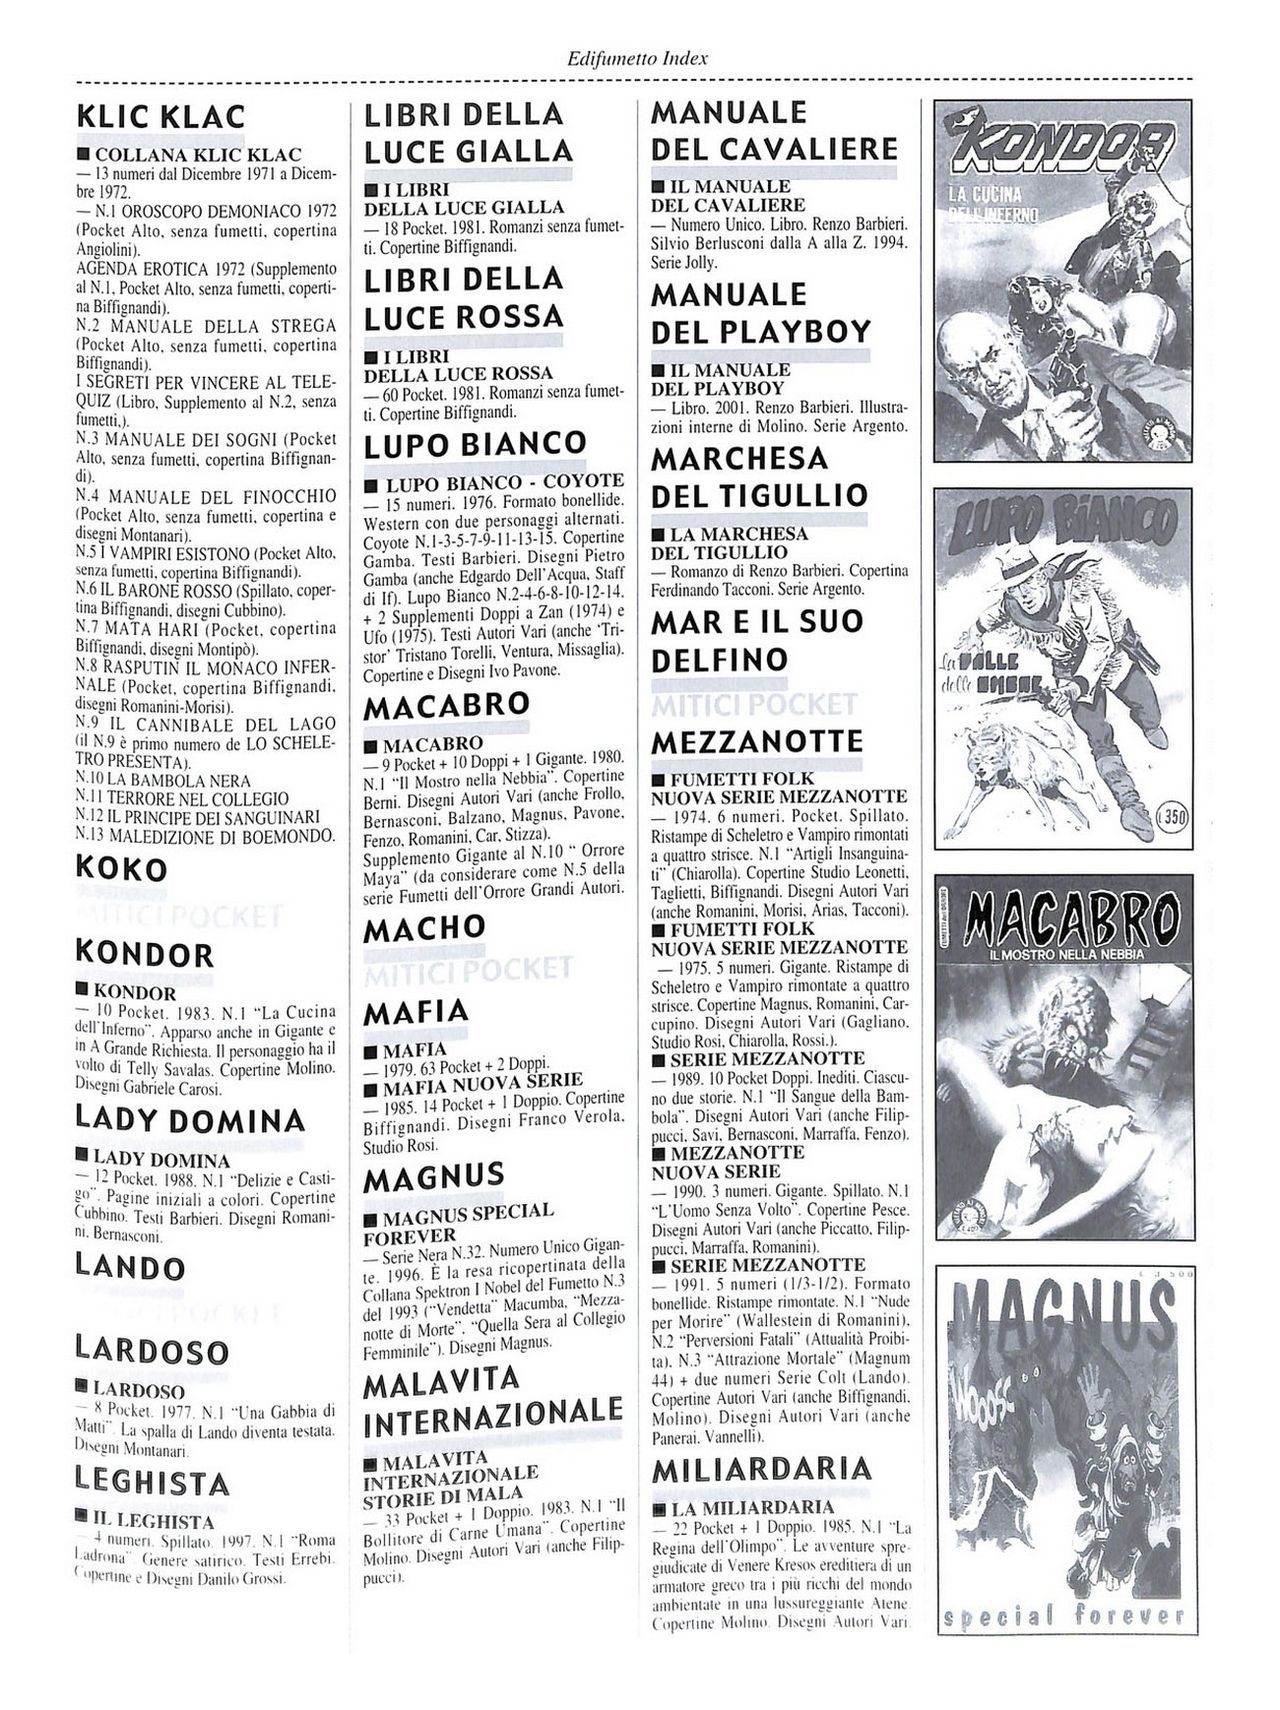 EdiFumetto index (Graziano Origa, 2002) [Italian] 84